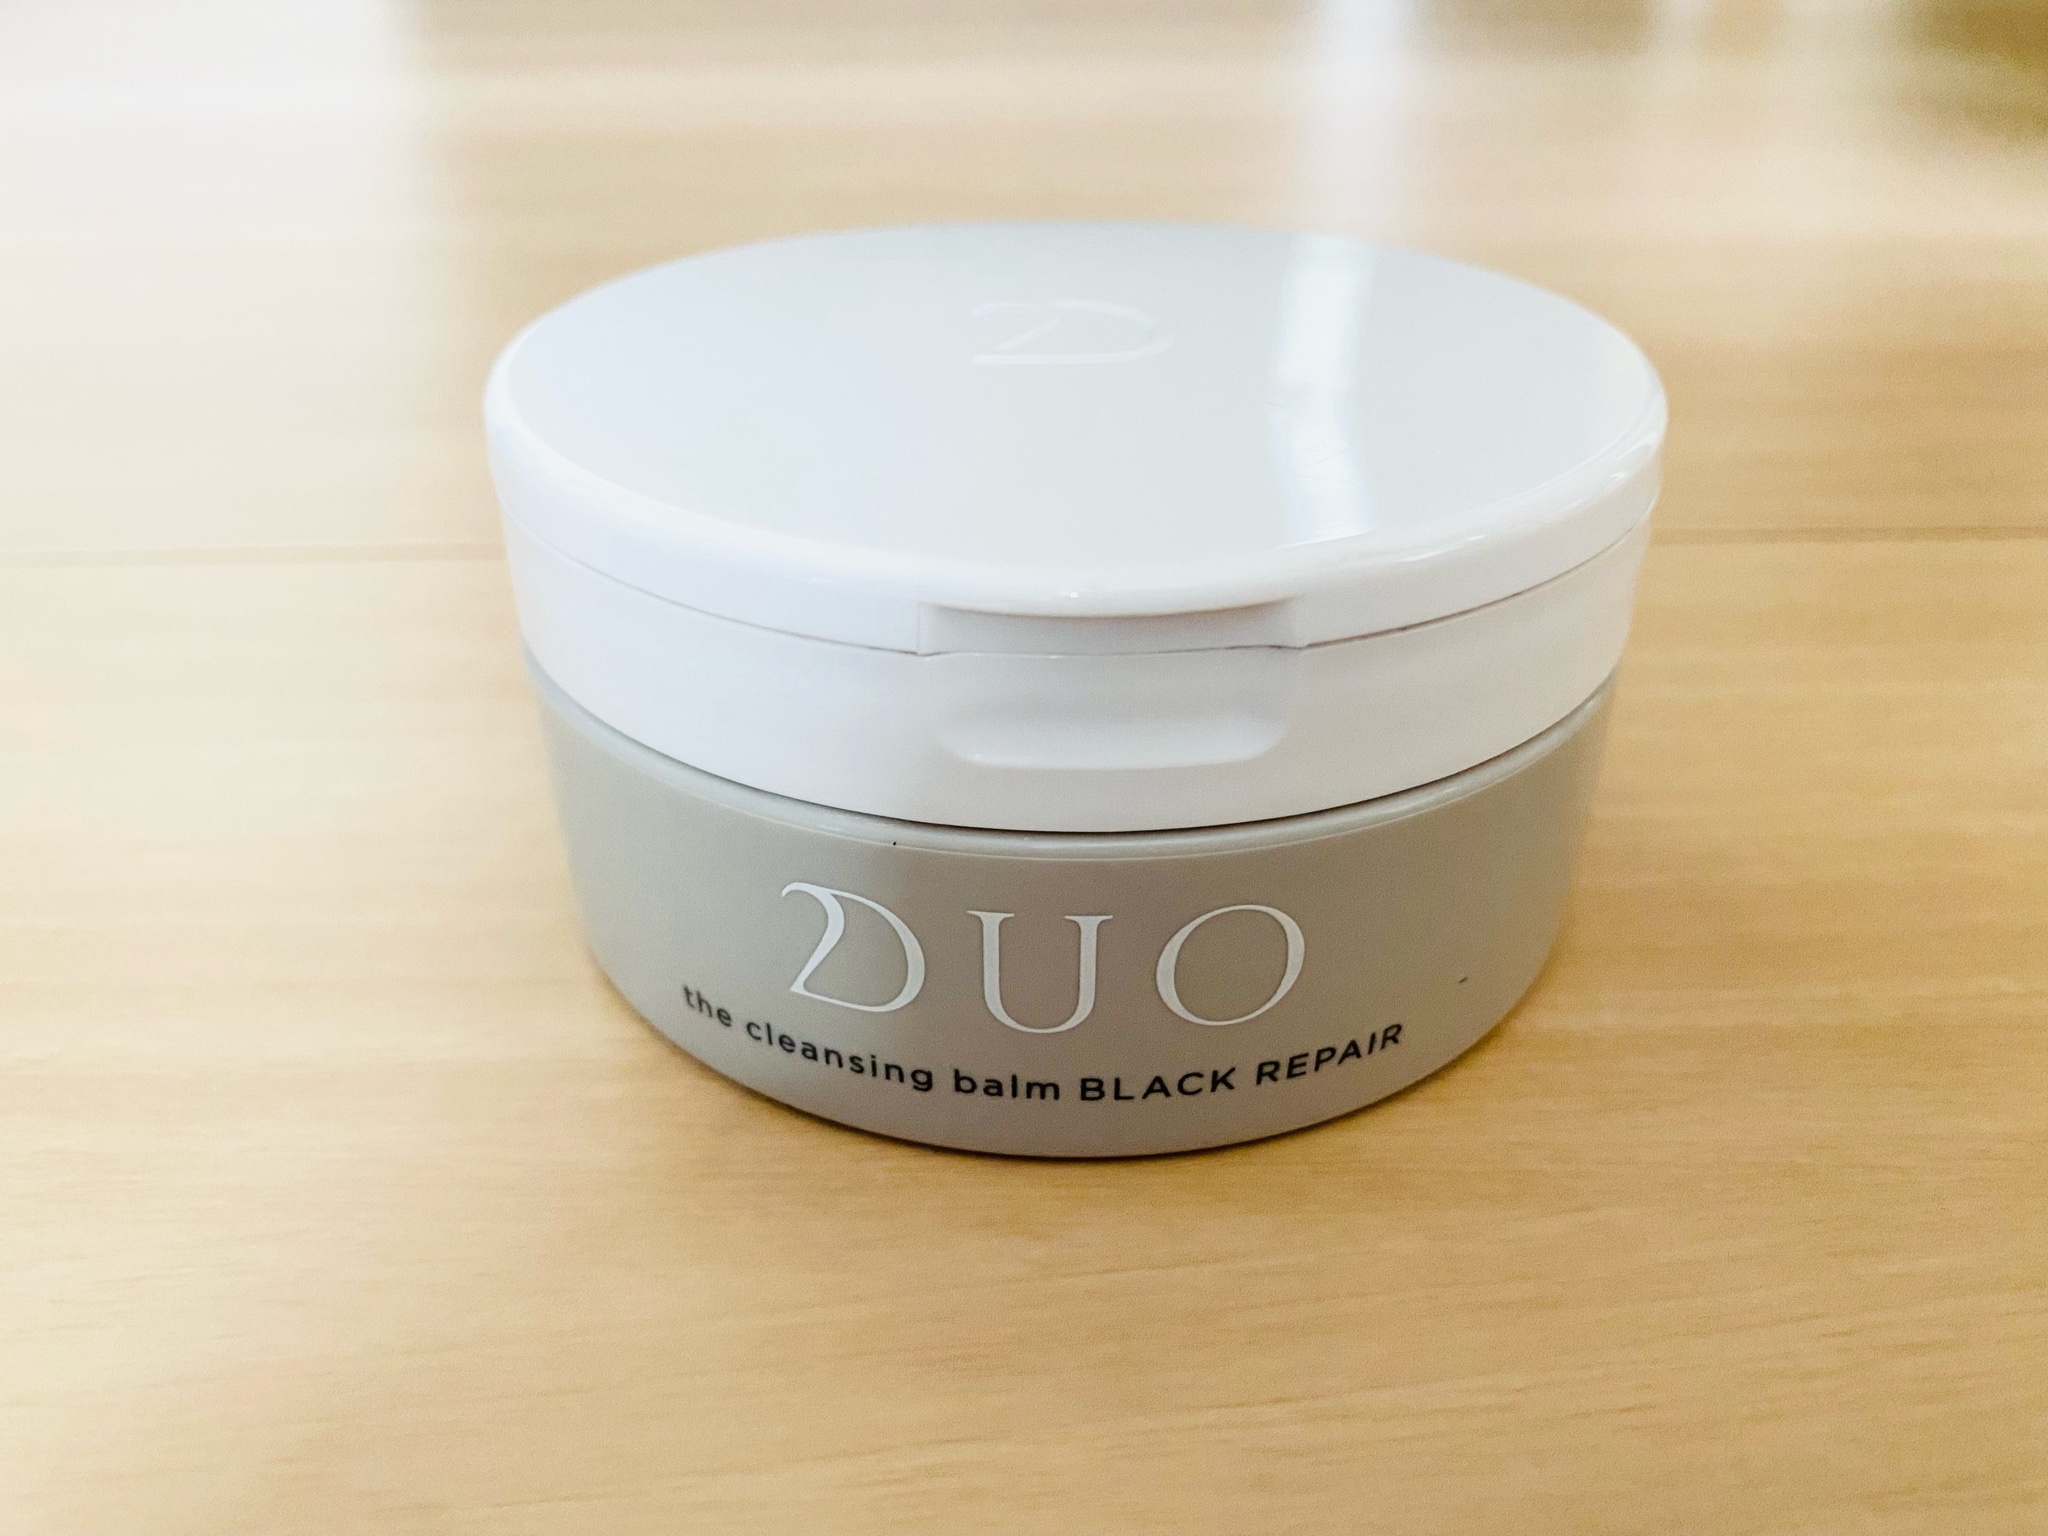 DUO(デュオ) / ザ クレンジングバーム ブラックリペアの公式商品情報 